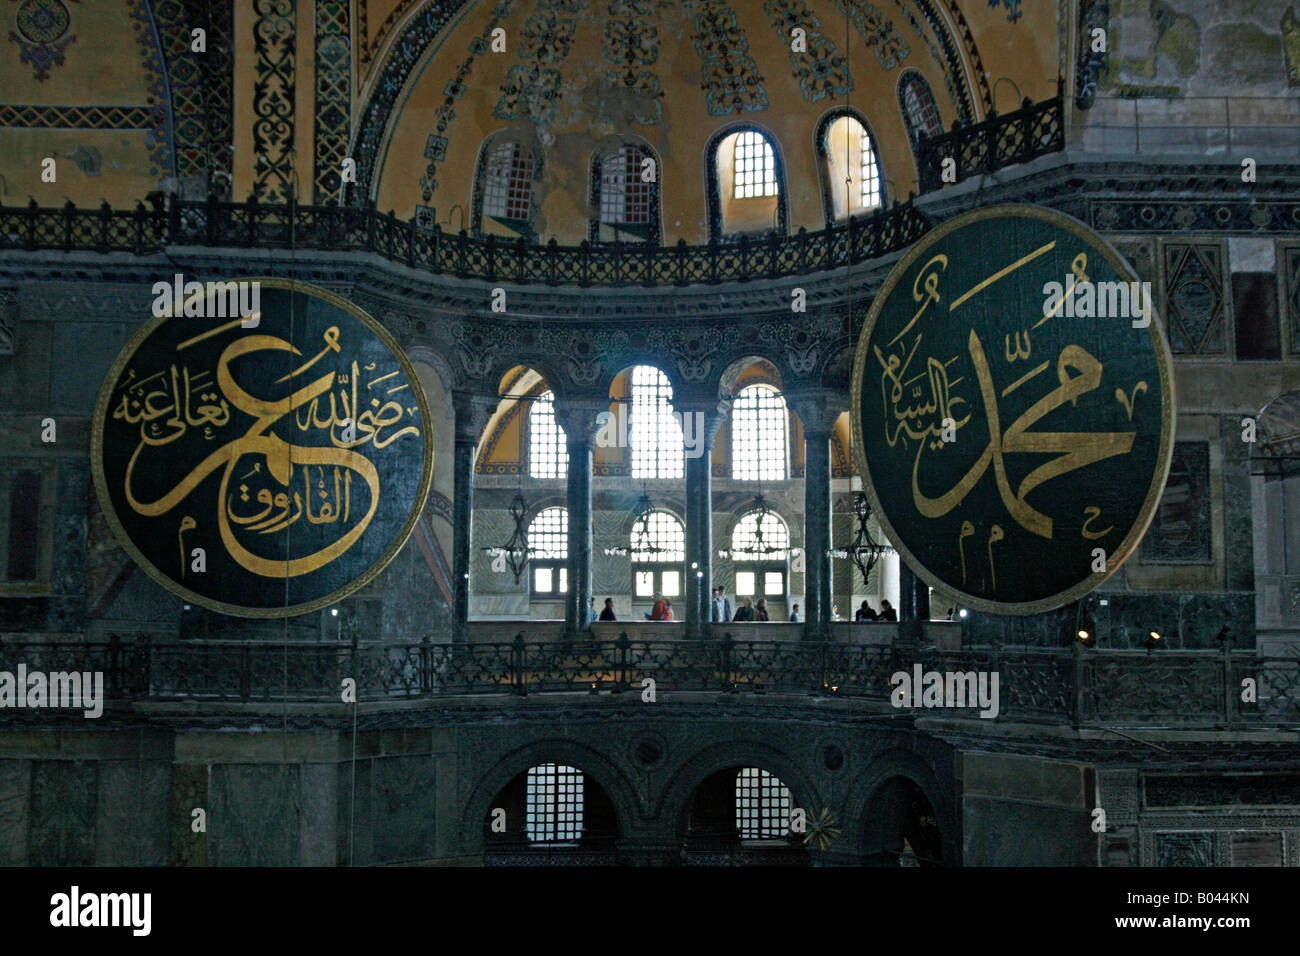 Enormi dischi di legno portano i nomi del califfo Omar e il Profeta Maometto all'Aya Sofya Istanbul Turchia Foto Stock